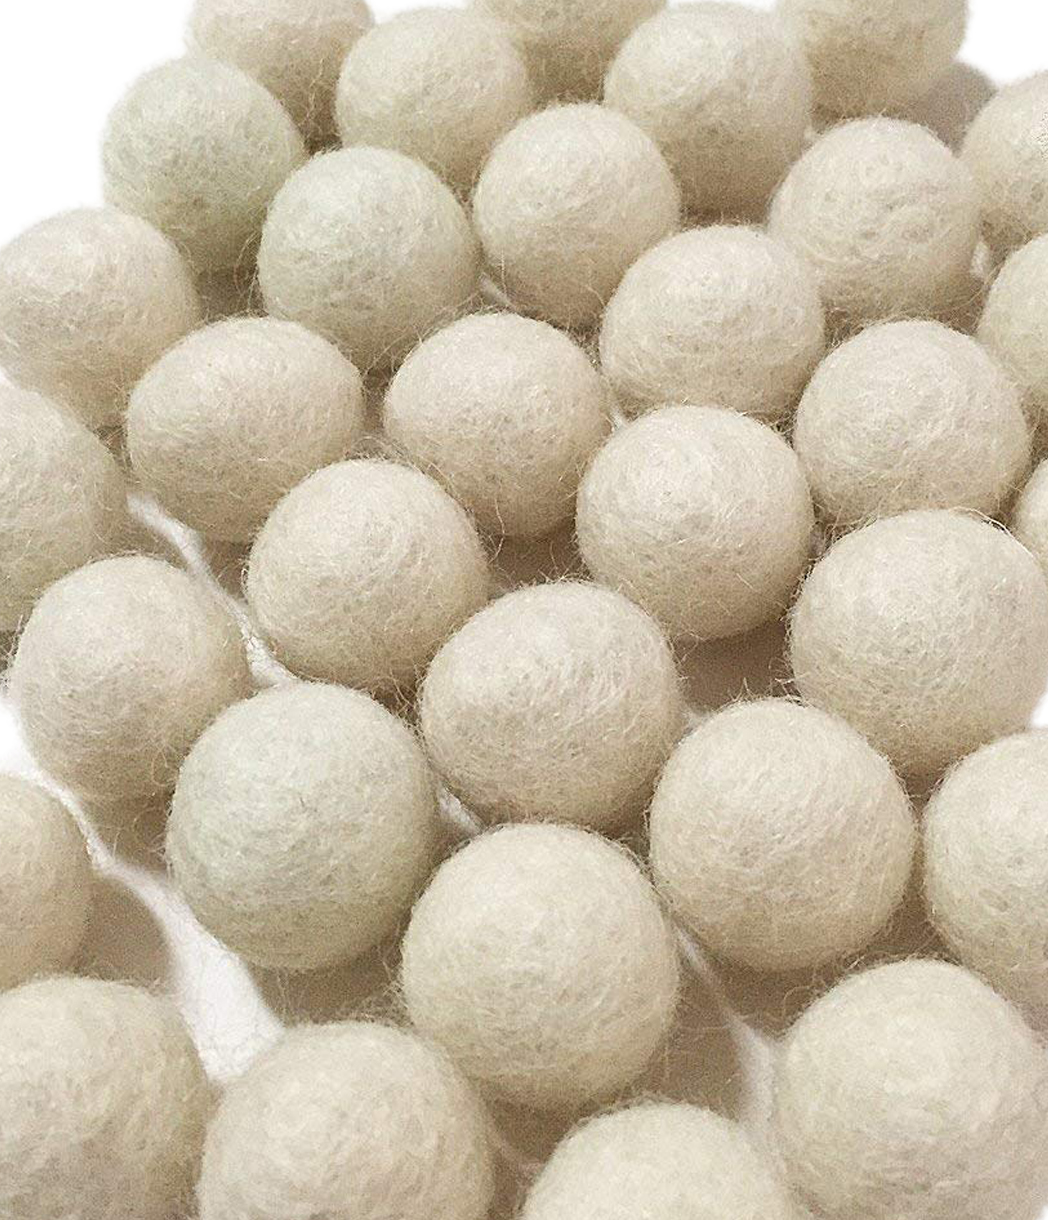 Yarn Place Felt Balls - 100 Pure Wool Beads 30mm White W1